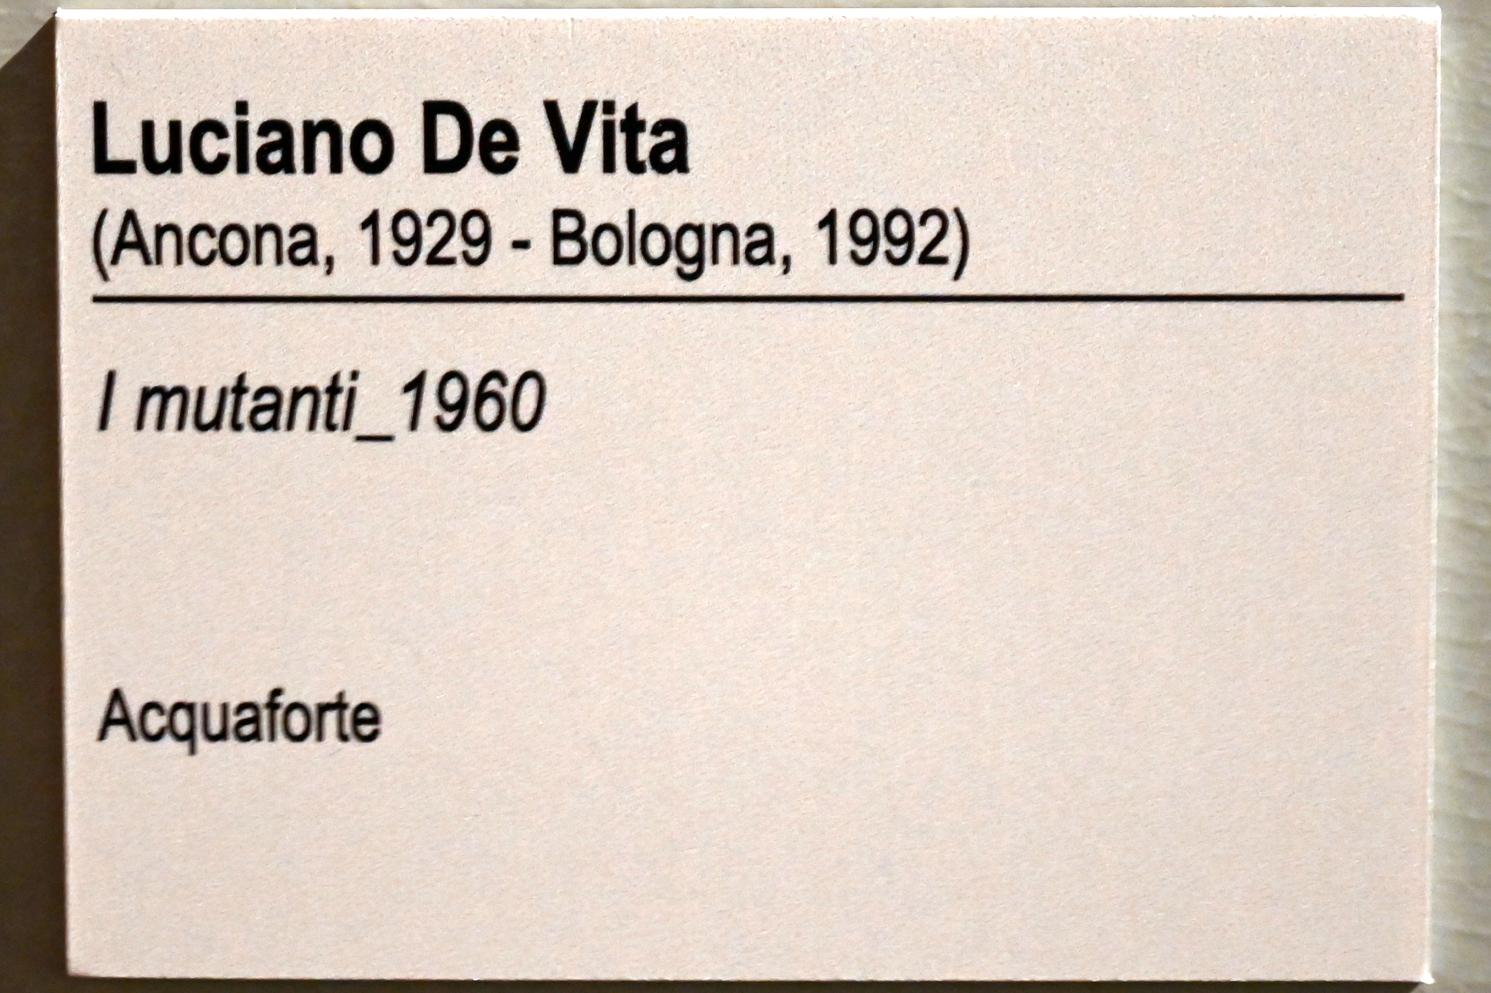 Luciano De Vita (1960), Die Mutanten, Ancona, Pinacoteca civica Francesco Podesti, Zwischenetage Saal 1, 1960, Bild 3/3